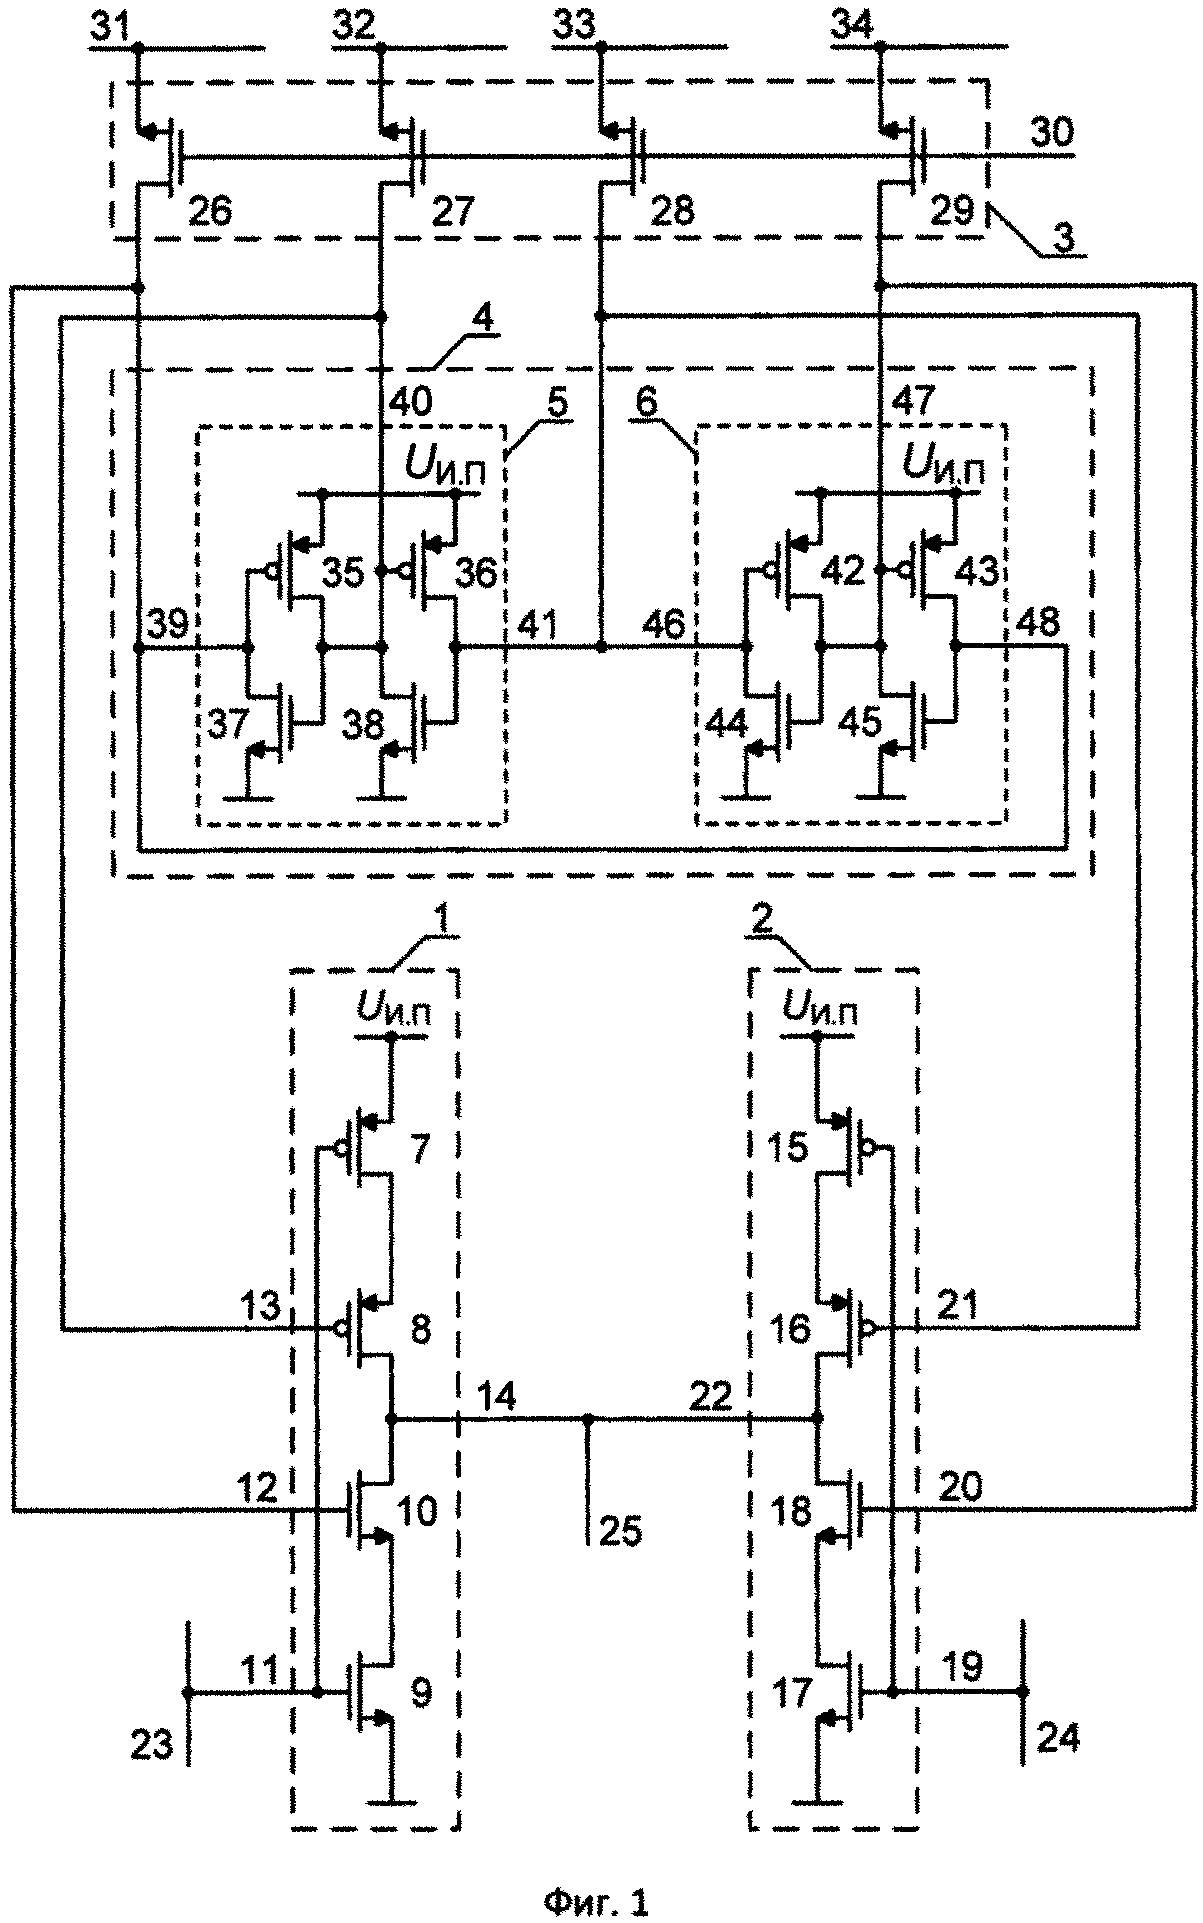 Логический элемент сравнения комплементарной металл-оксид-полупроводниковой структуры ассоциативного селектора запоминающего устройства